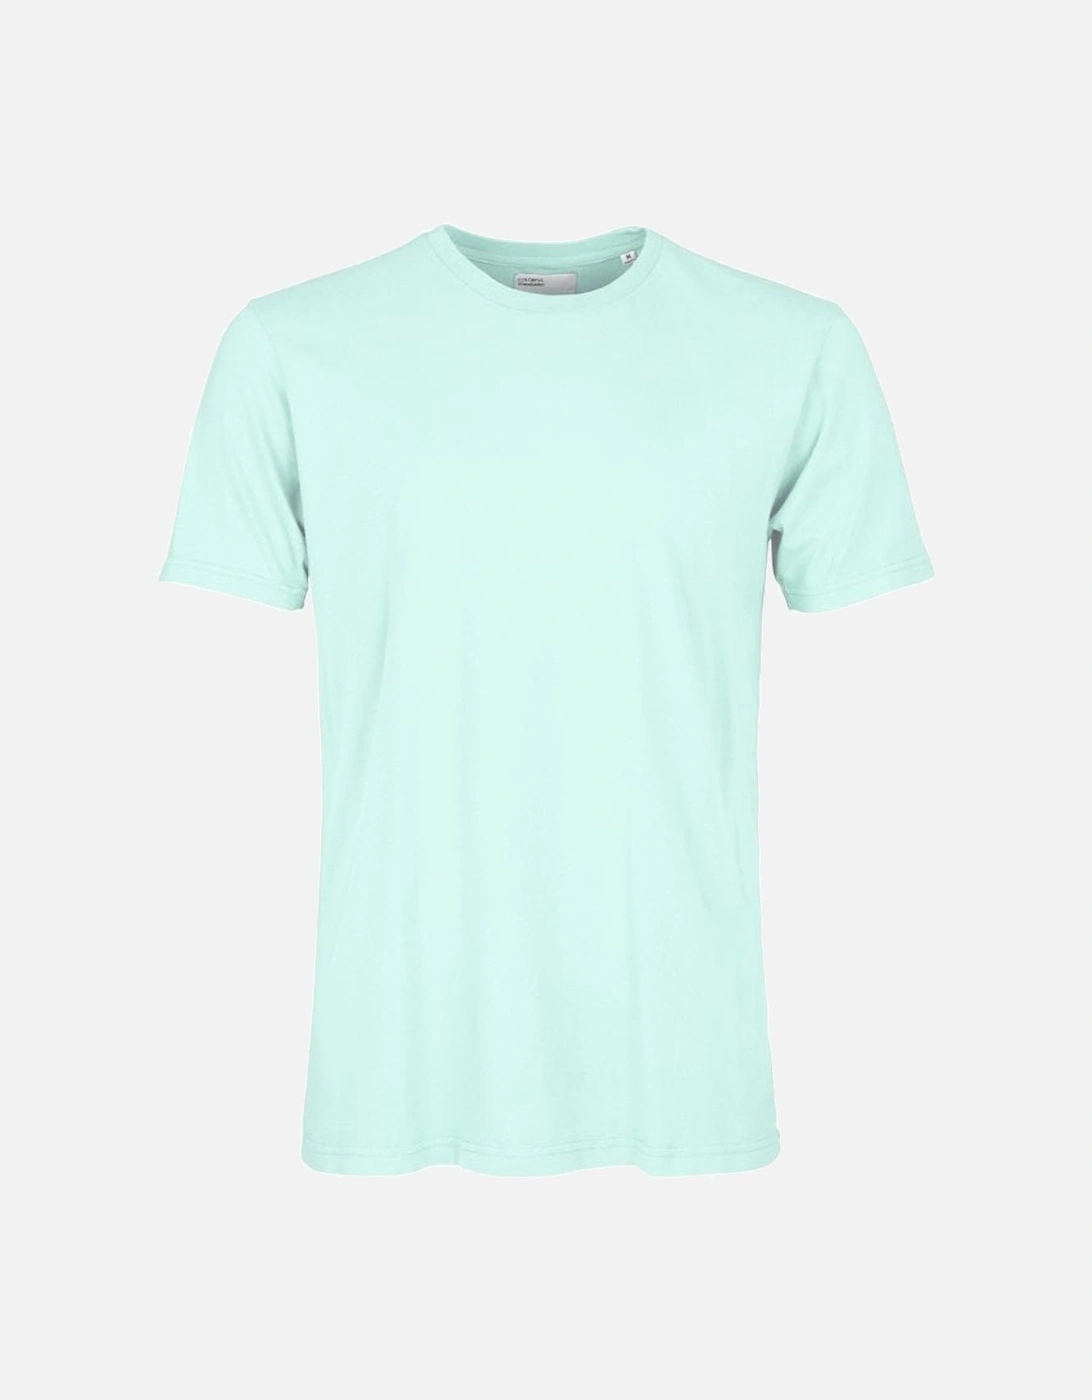 Classic Organic T-Shirt - Light Aqua, 2 of 1